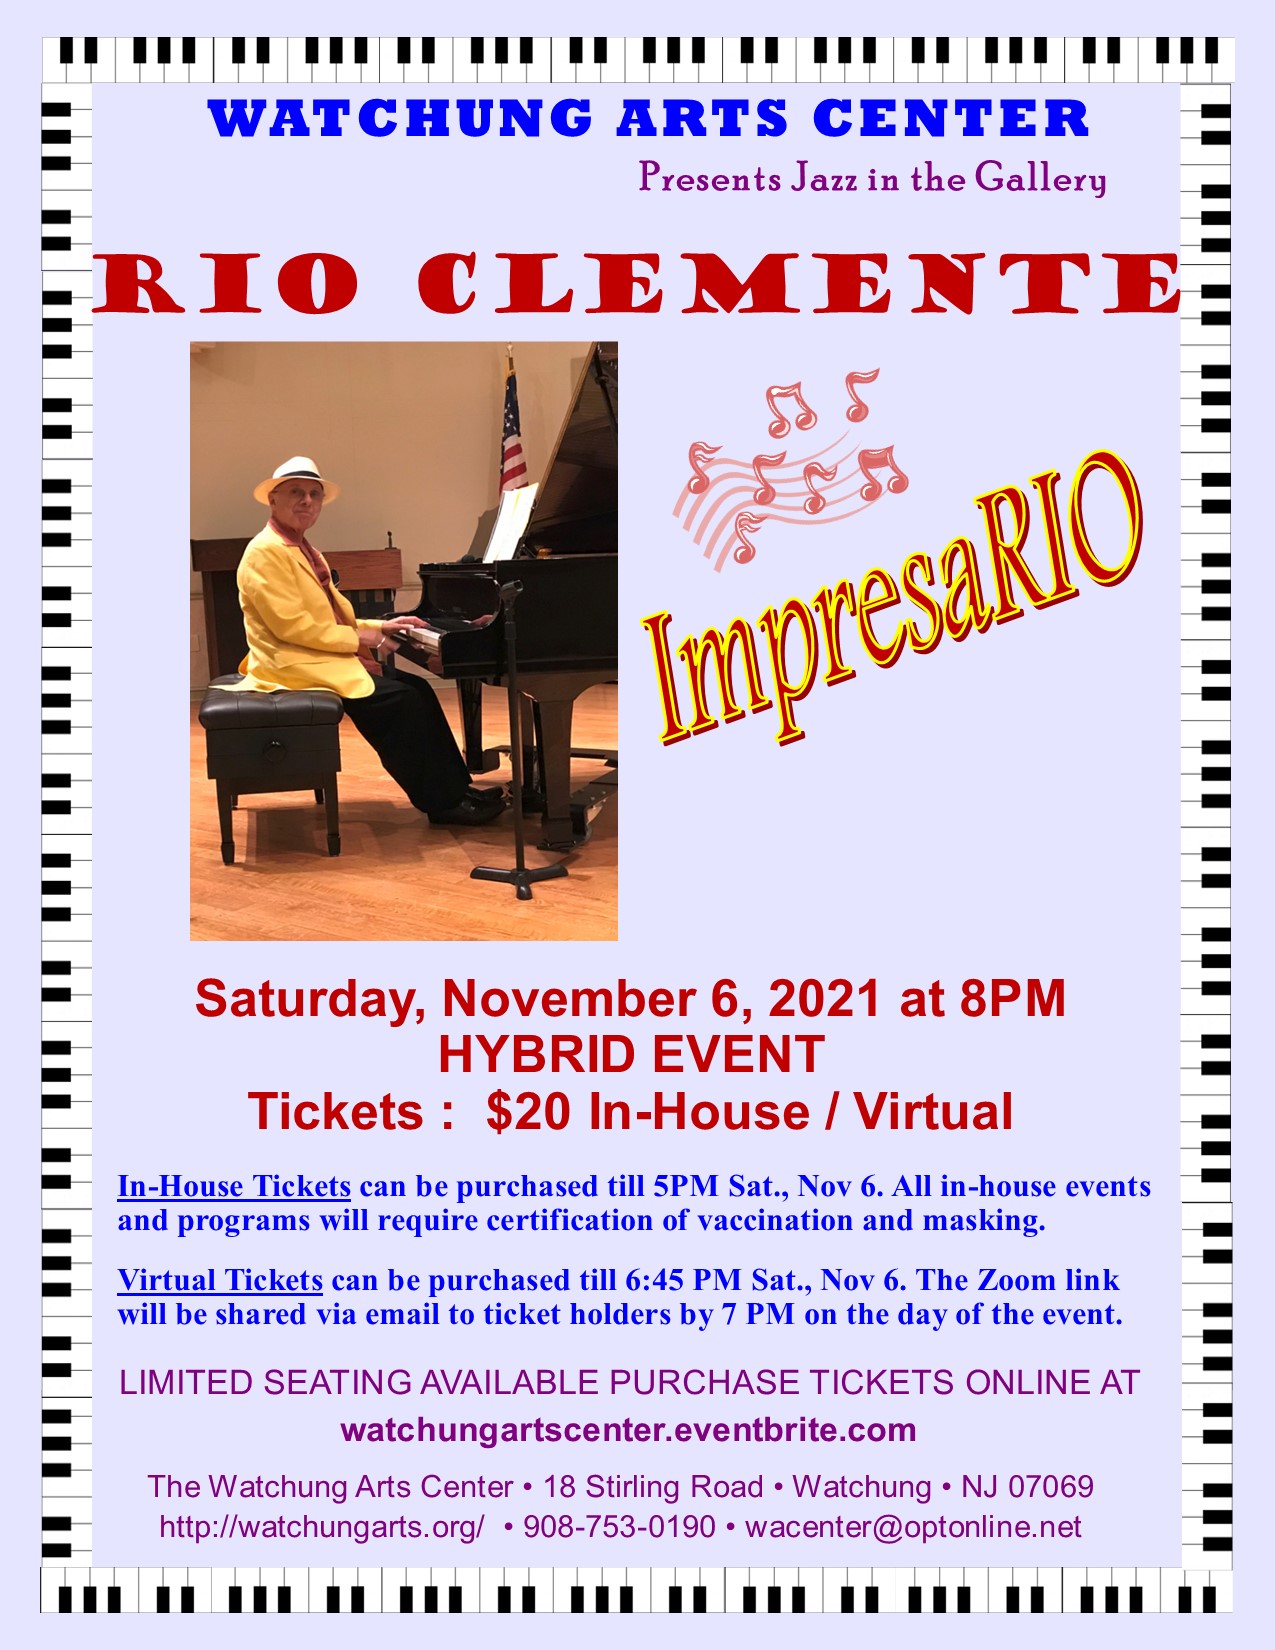 Rio Clemente Concert Flyer